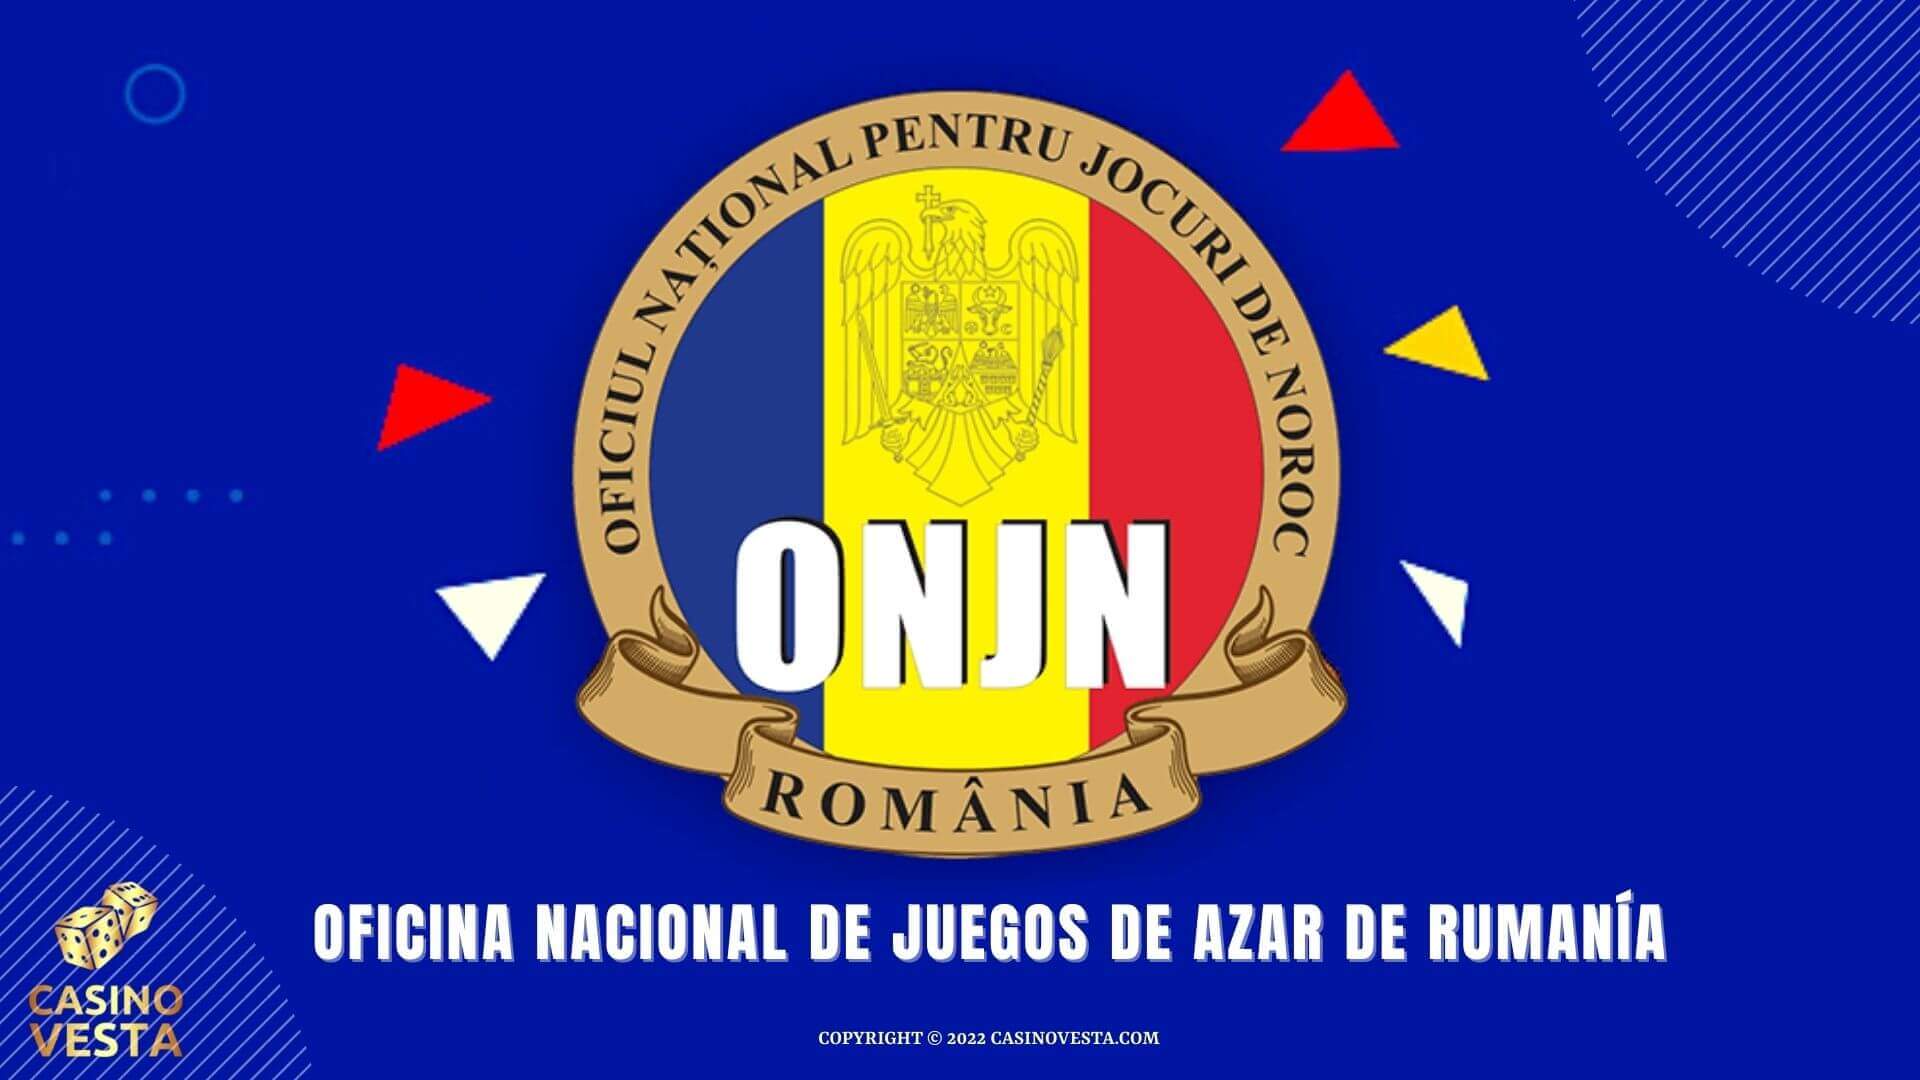 La Oficina Nacional de Juegos de Azar de Rumanía